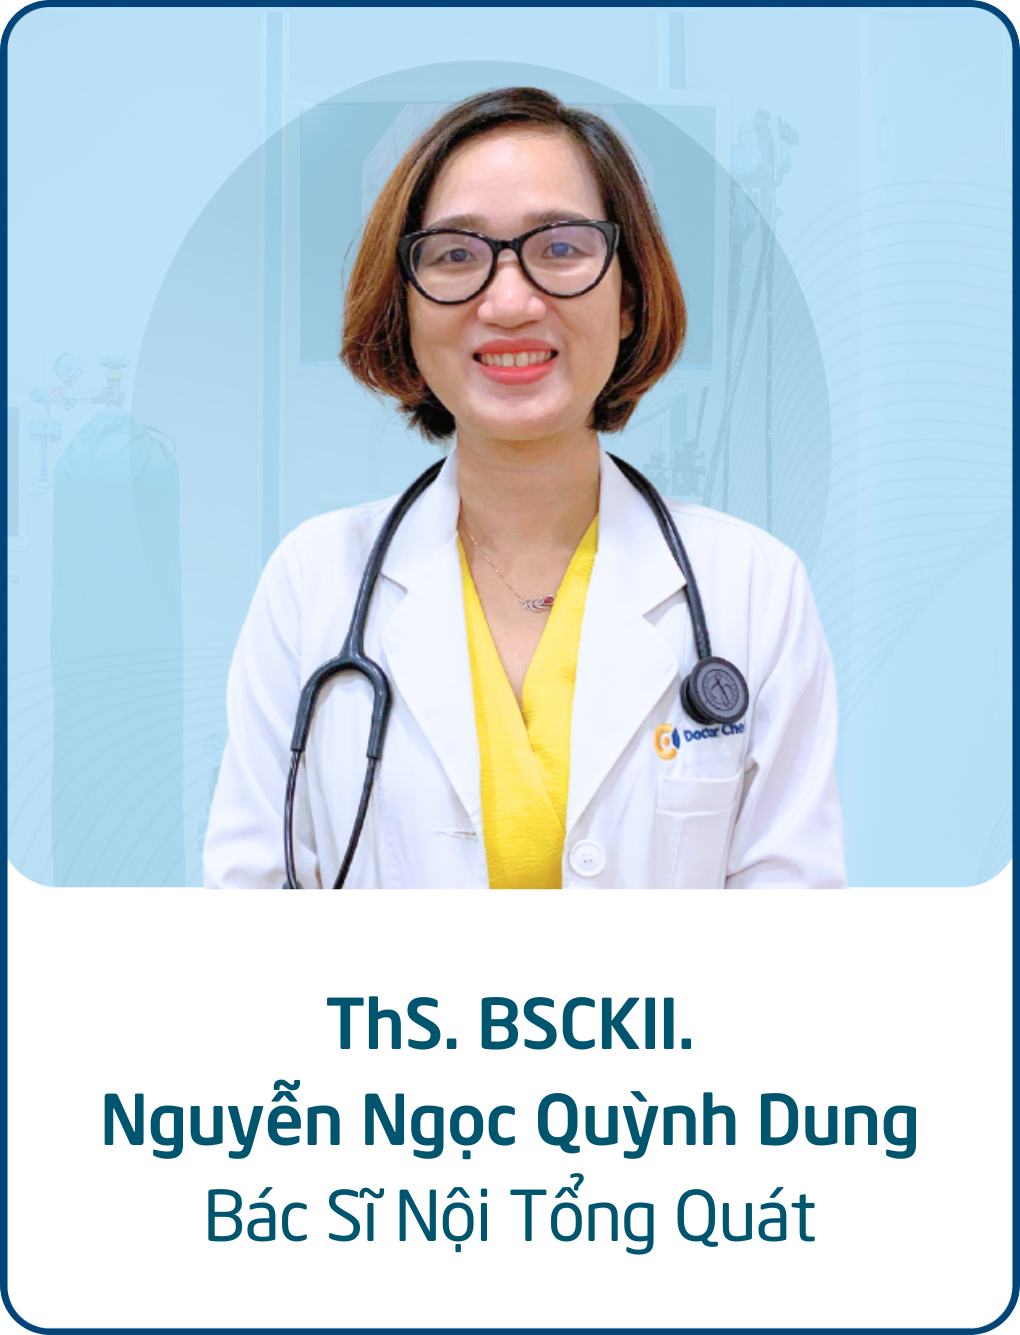 ThS. BS. CKII. Nguyễn Ngọc Quỳnh Dung